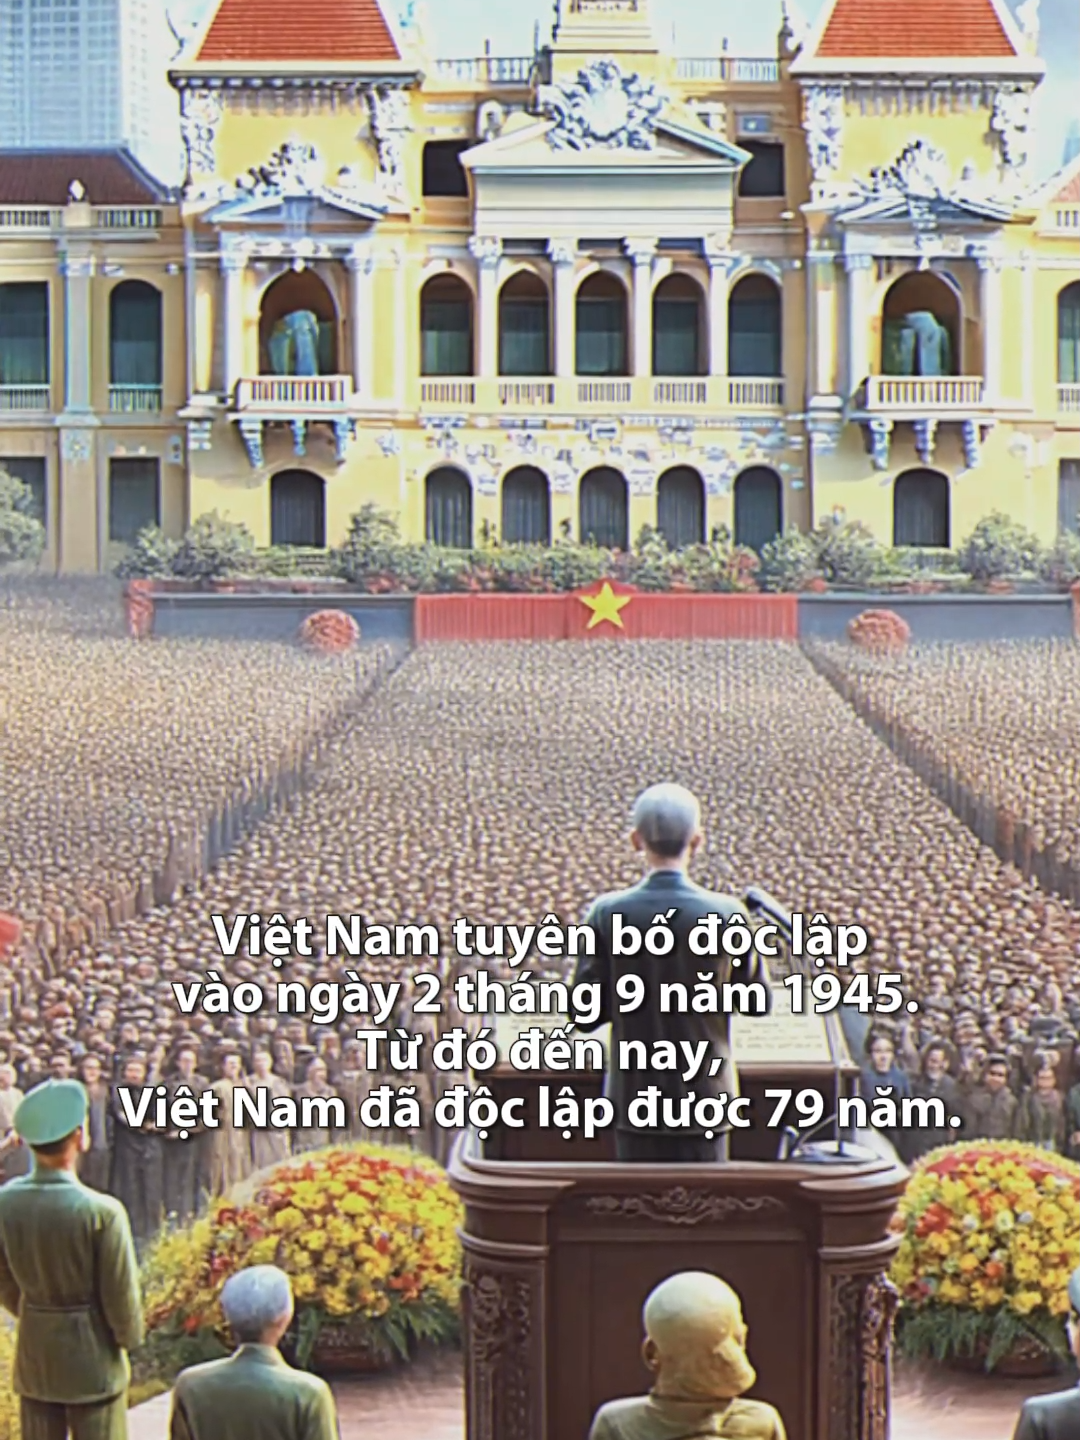 Là người Việt Nam nhưng không phải ai cũng biết. #lichsuvietnam #chientranhvietnam🇻🇳🇻🇳🇻🇳 #phattrienkinhte